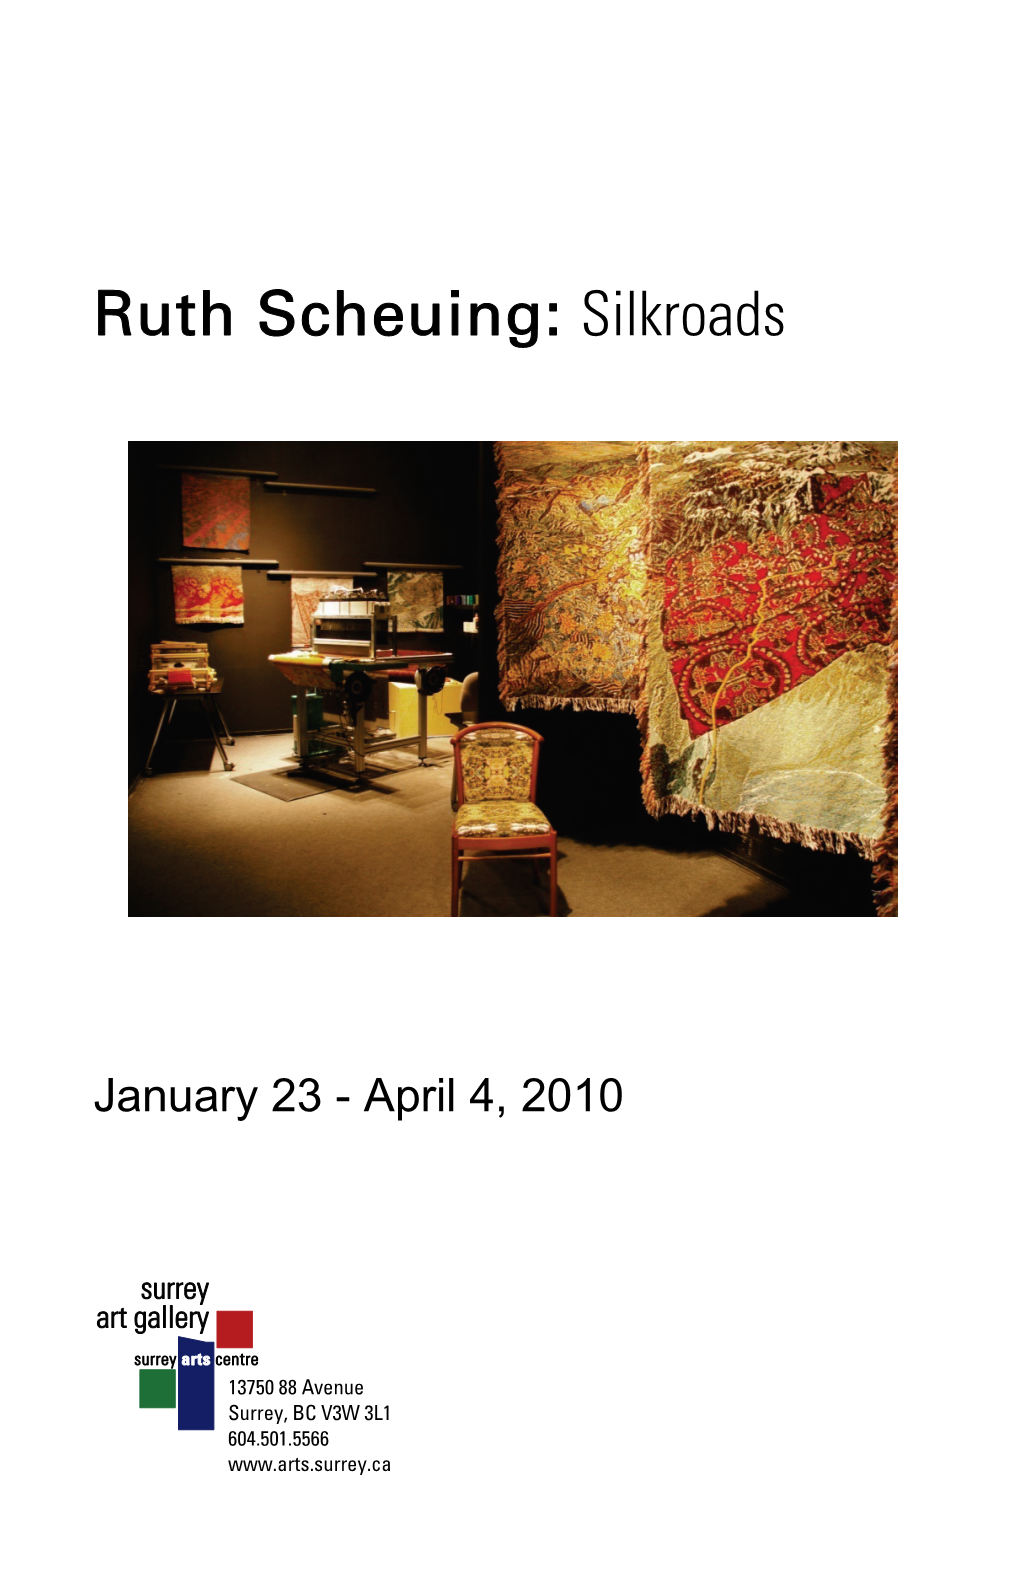 Ruth Scheuing: Silkroads Brochure